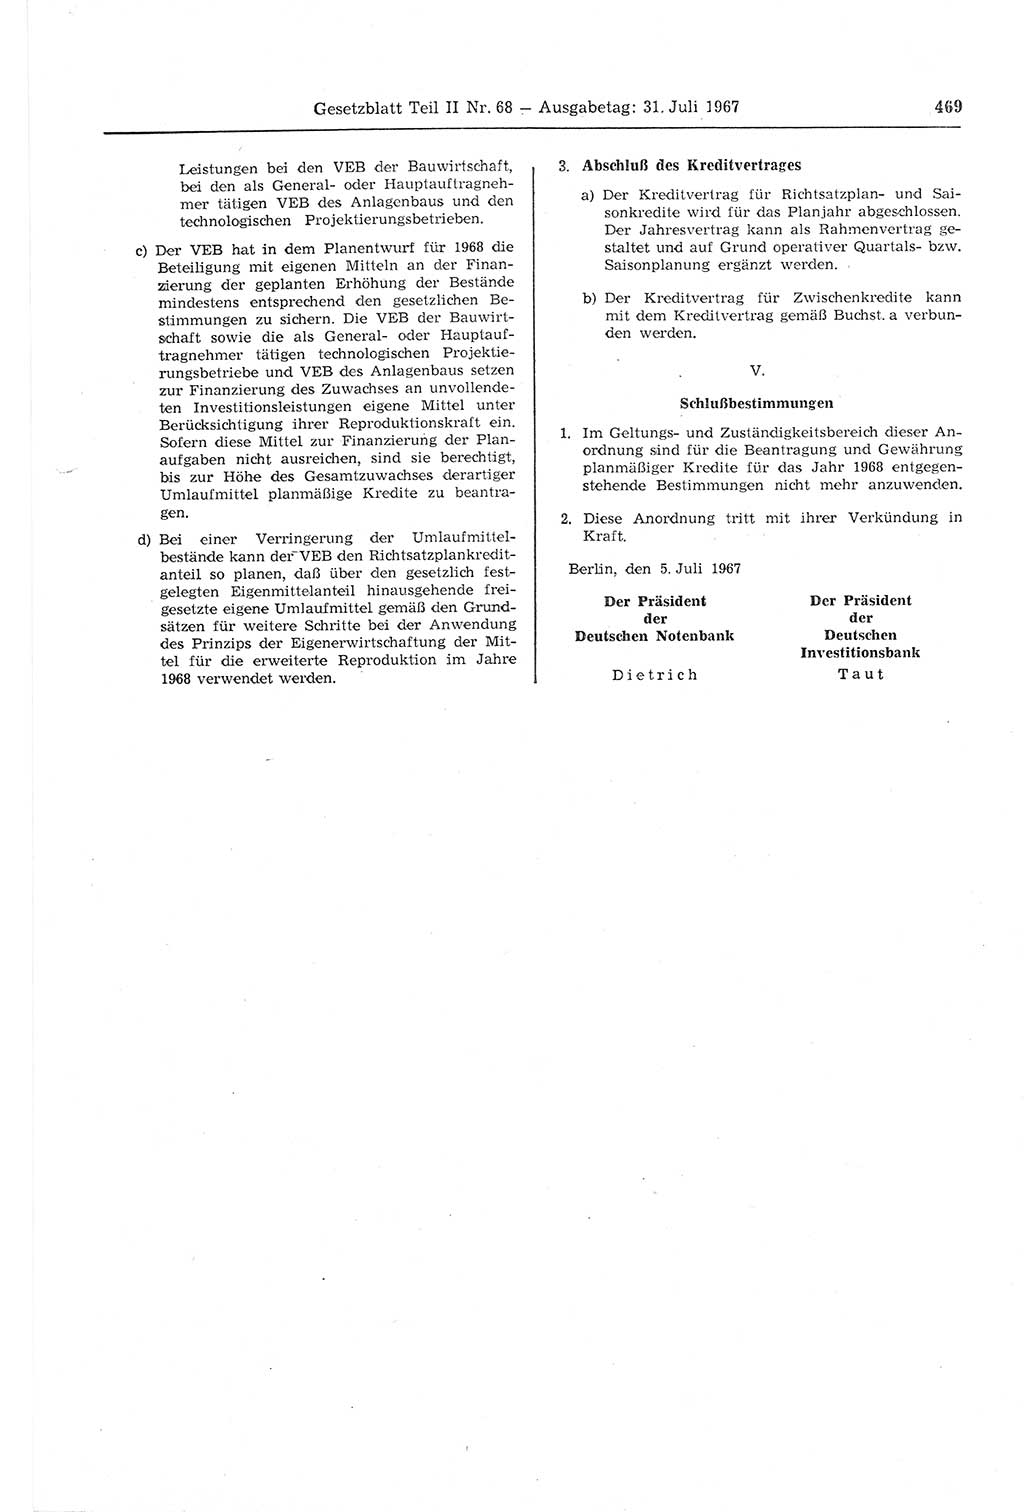 Gesetzblatt (GBl.) der Deutschen Demokratischen Republik (DDR) Teil ⅠⅠ 1967, Seite 469 (GBl. DDR ⅠⅠ 1967, S. 469)